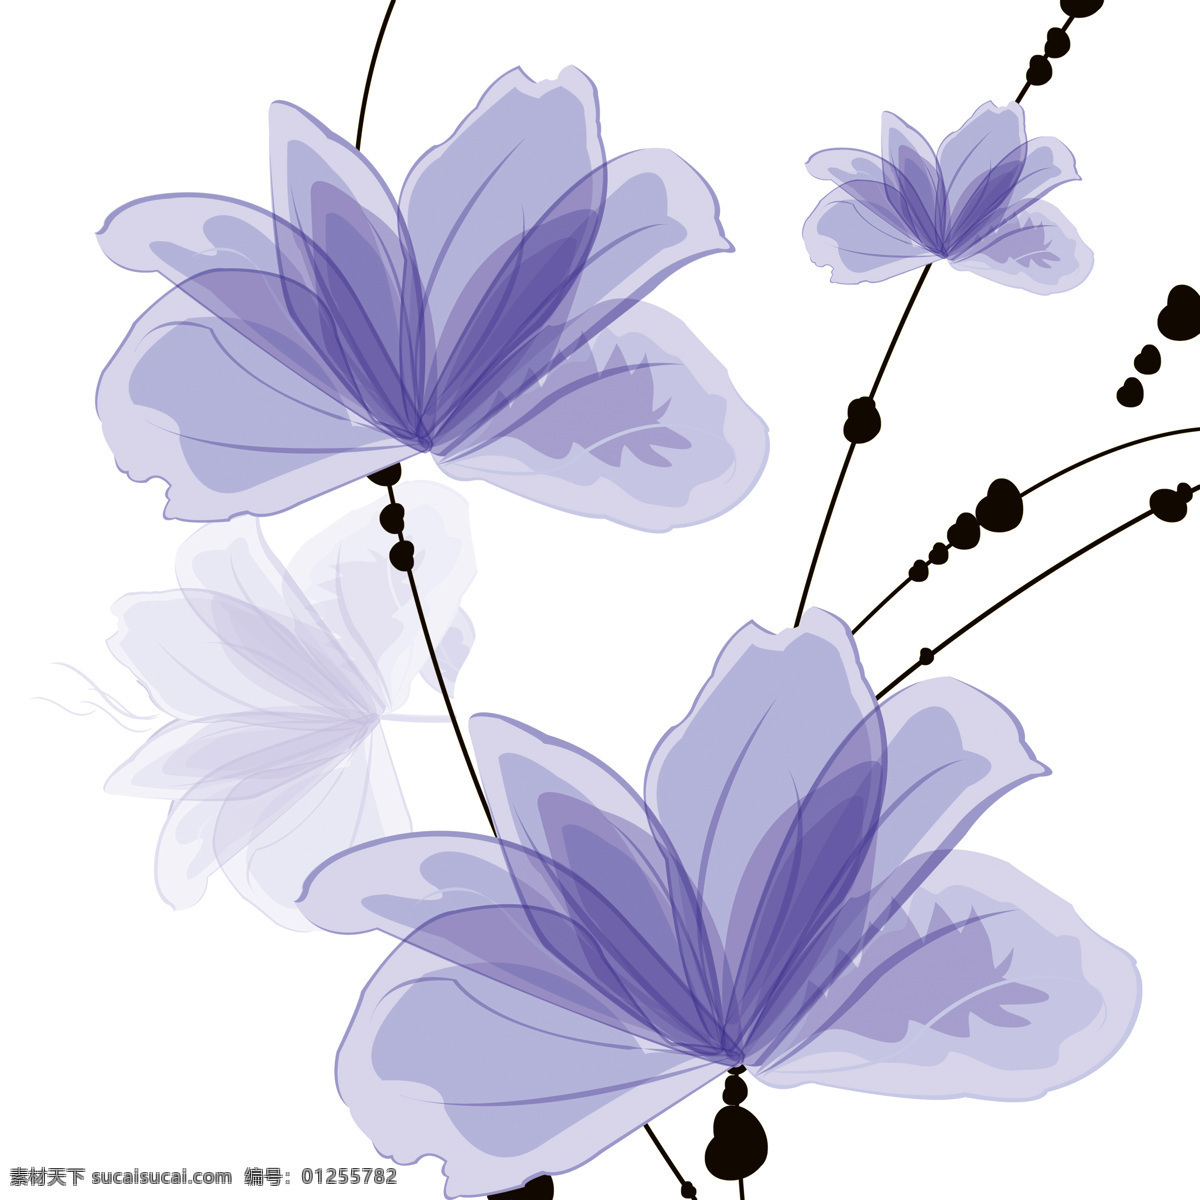 黑色 线条 紫色 花朵 图案 无 框 画 室内装修 效果图 时尚 设计素材 空间设计 环境设计 家装实景图 现代装修 装修效果图 家居 客厅 黑白 紫色花朵 无框画